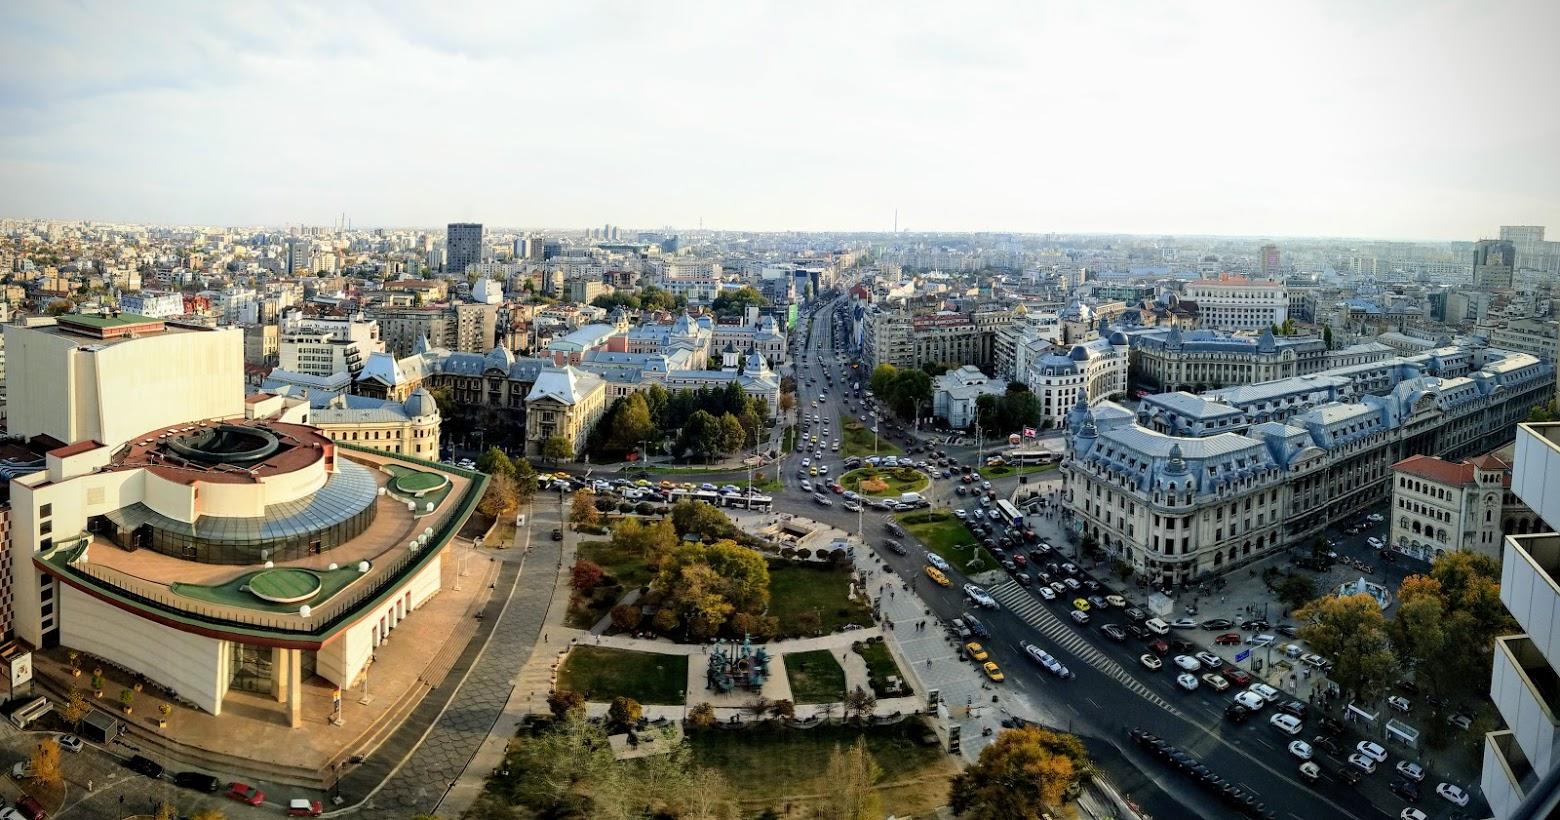 Πανοραμική φωτογραφία και αστικό τοπίο στην πρωτεύουσα της Ρουμανίας ξενοδοχεια βουκουρεστι